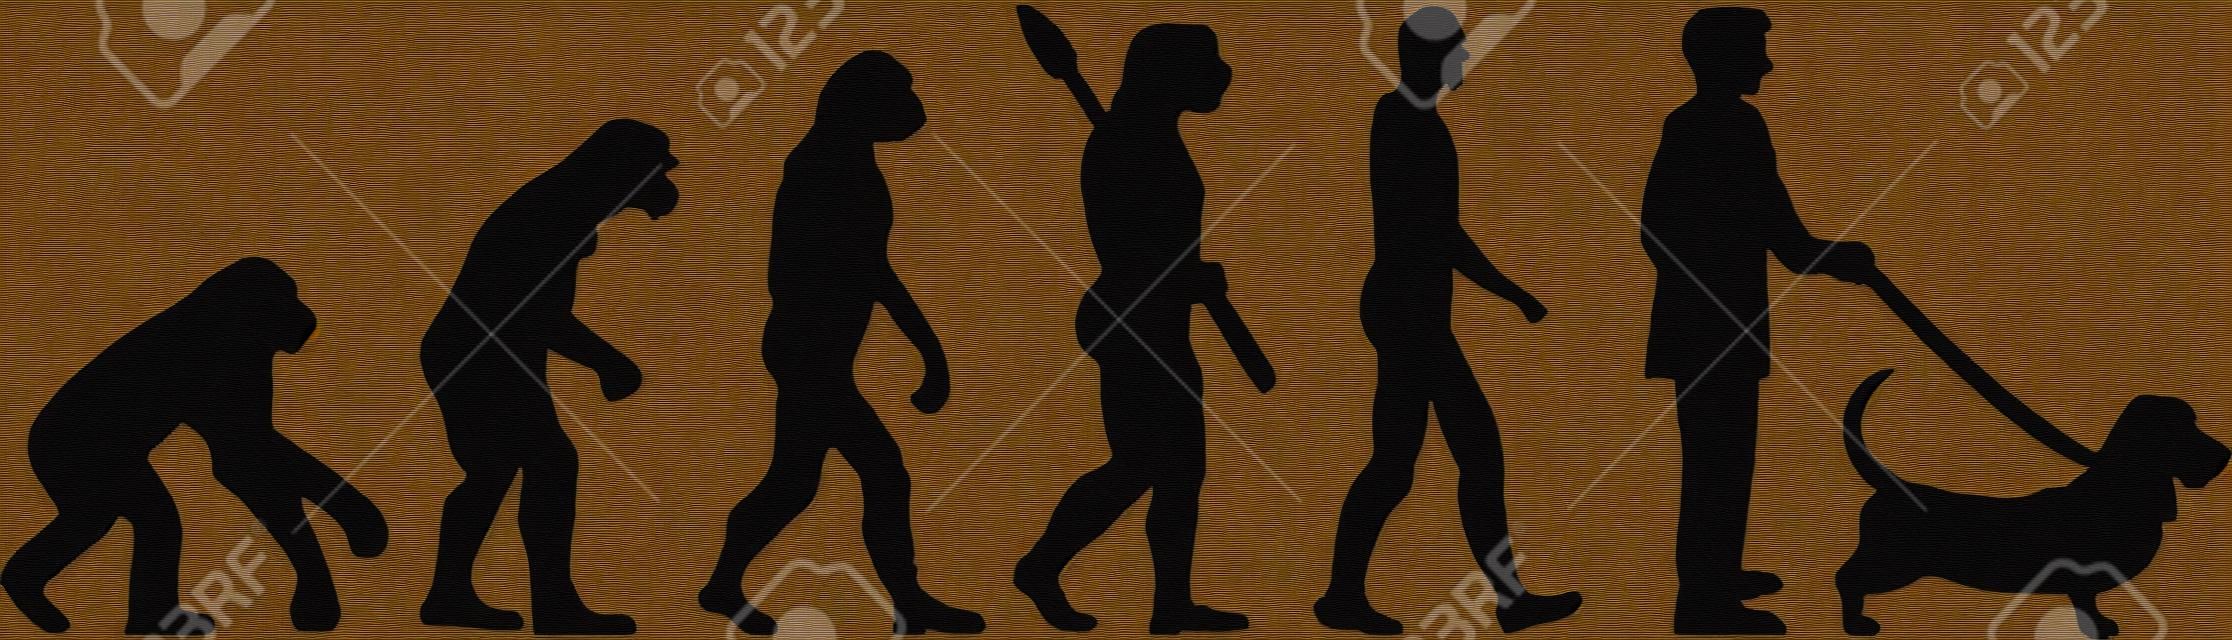 Evoluzione di basset hound con l'illustrazione della siluetta.